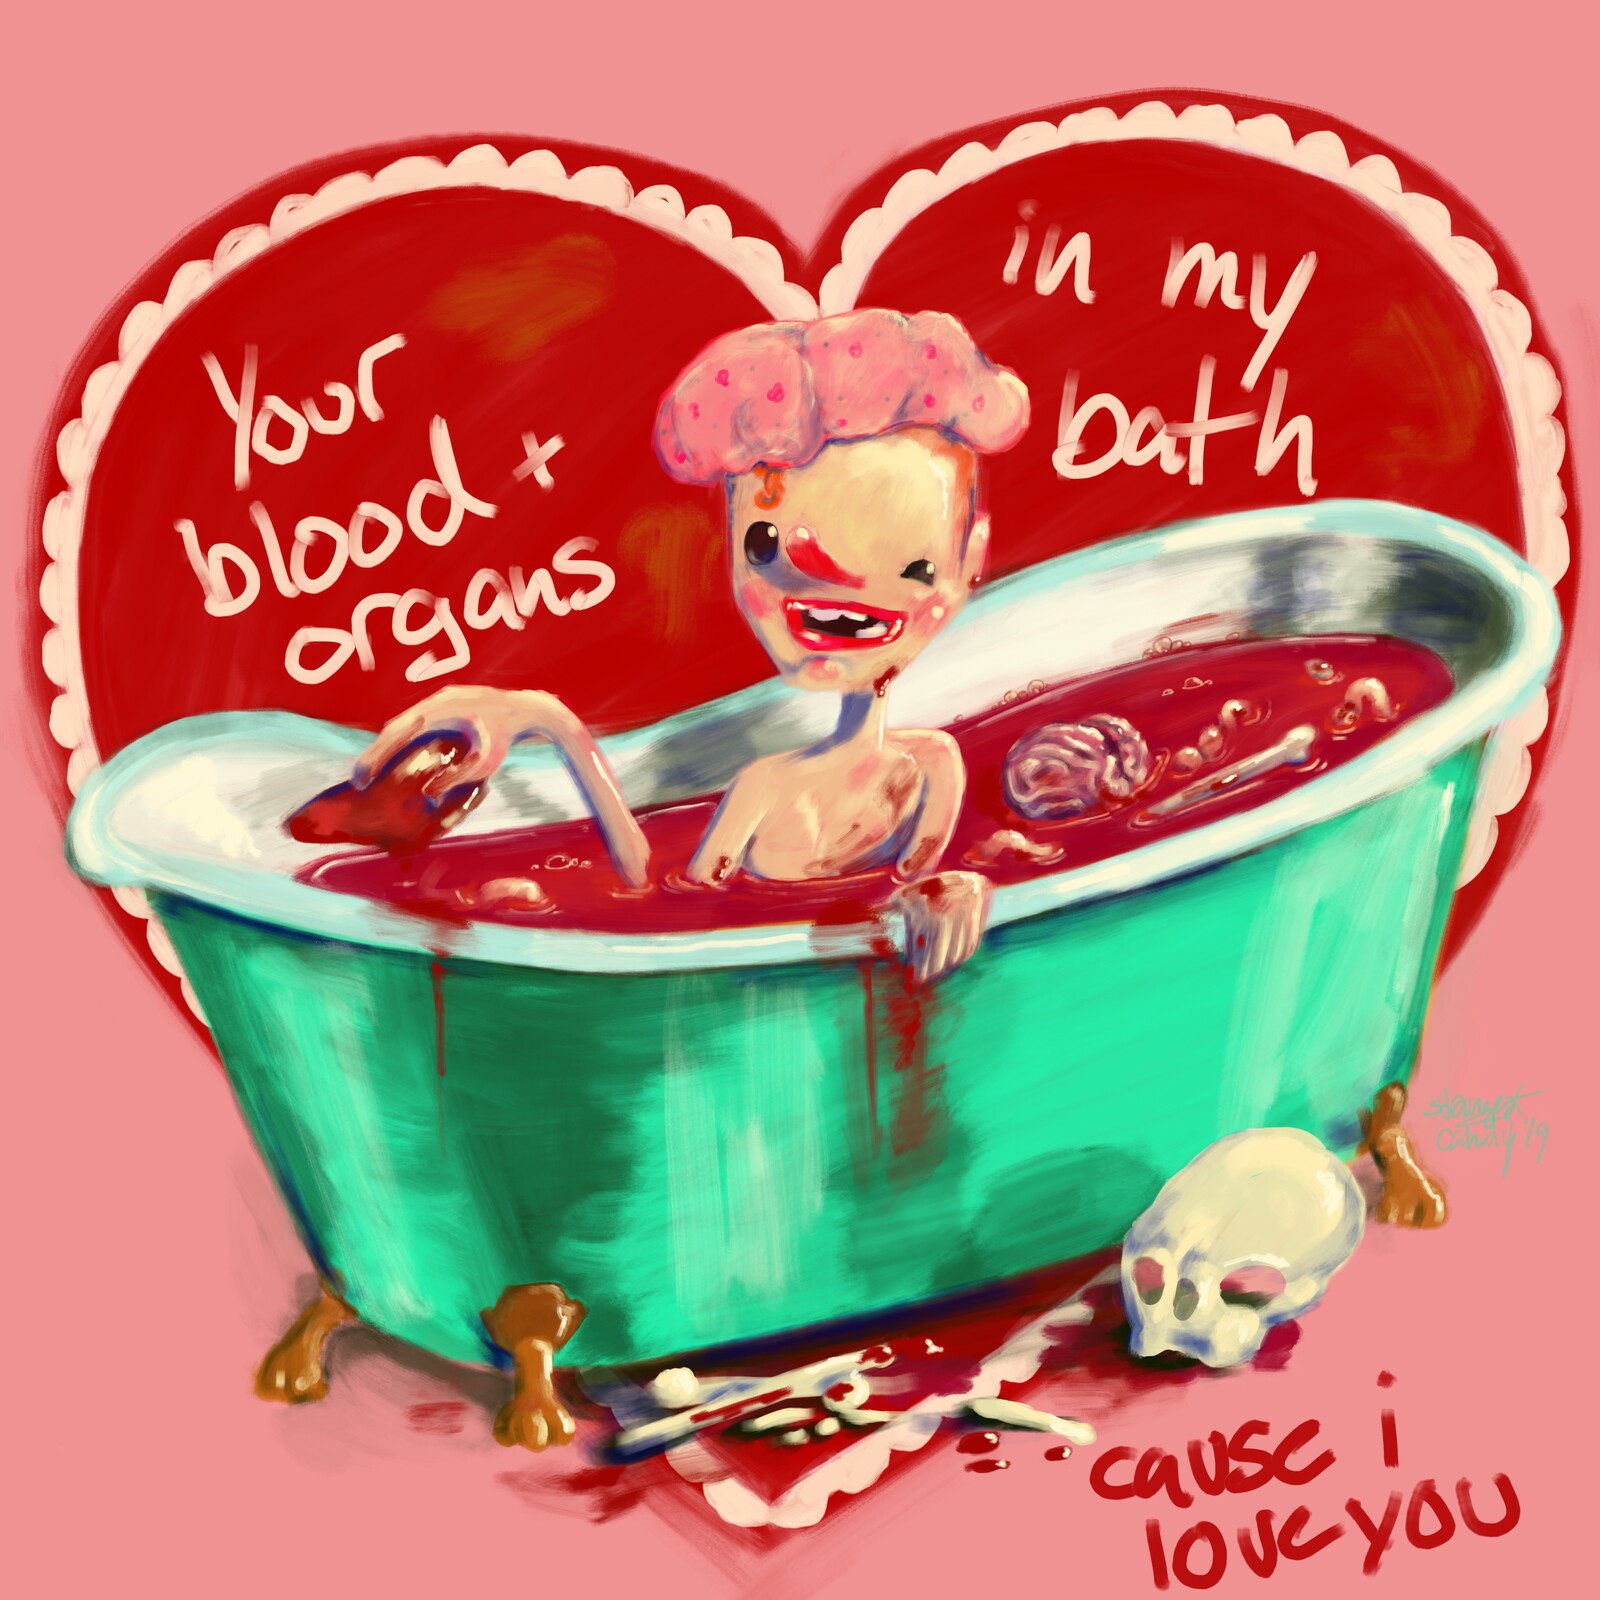 "in my bath"